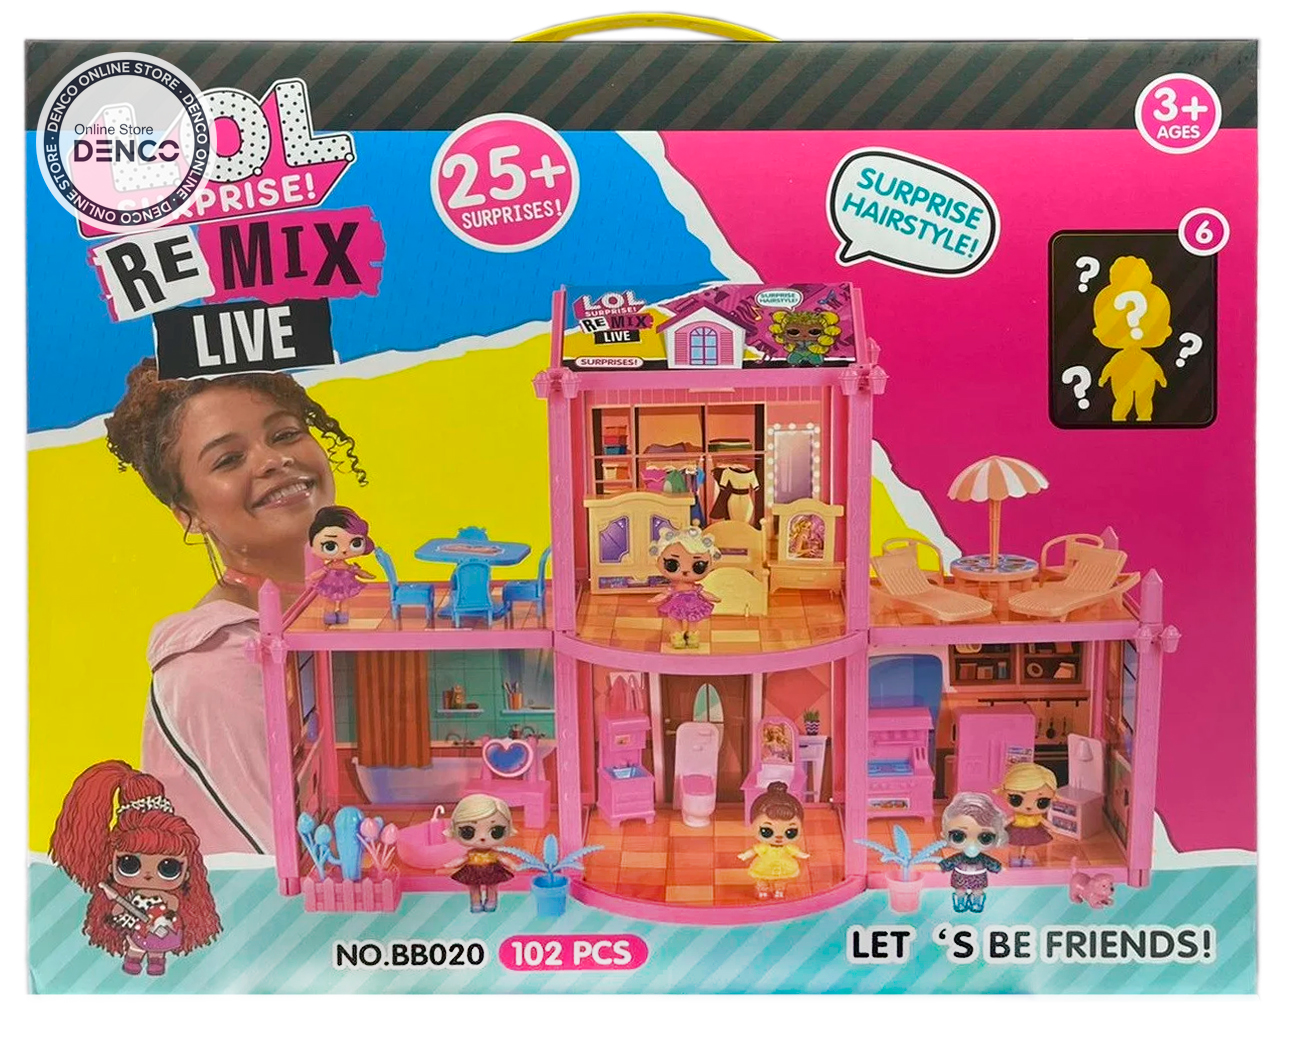 Игровой набор «Дом куклы OMG», 4 комнаты с мебелью, 6 кукол, 25 аксессуаров-сюрпризов / 38 см.